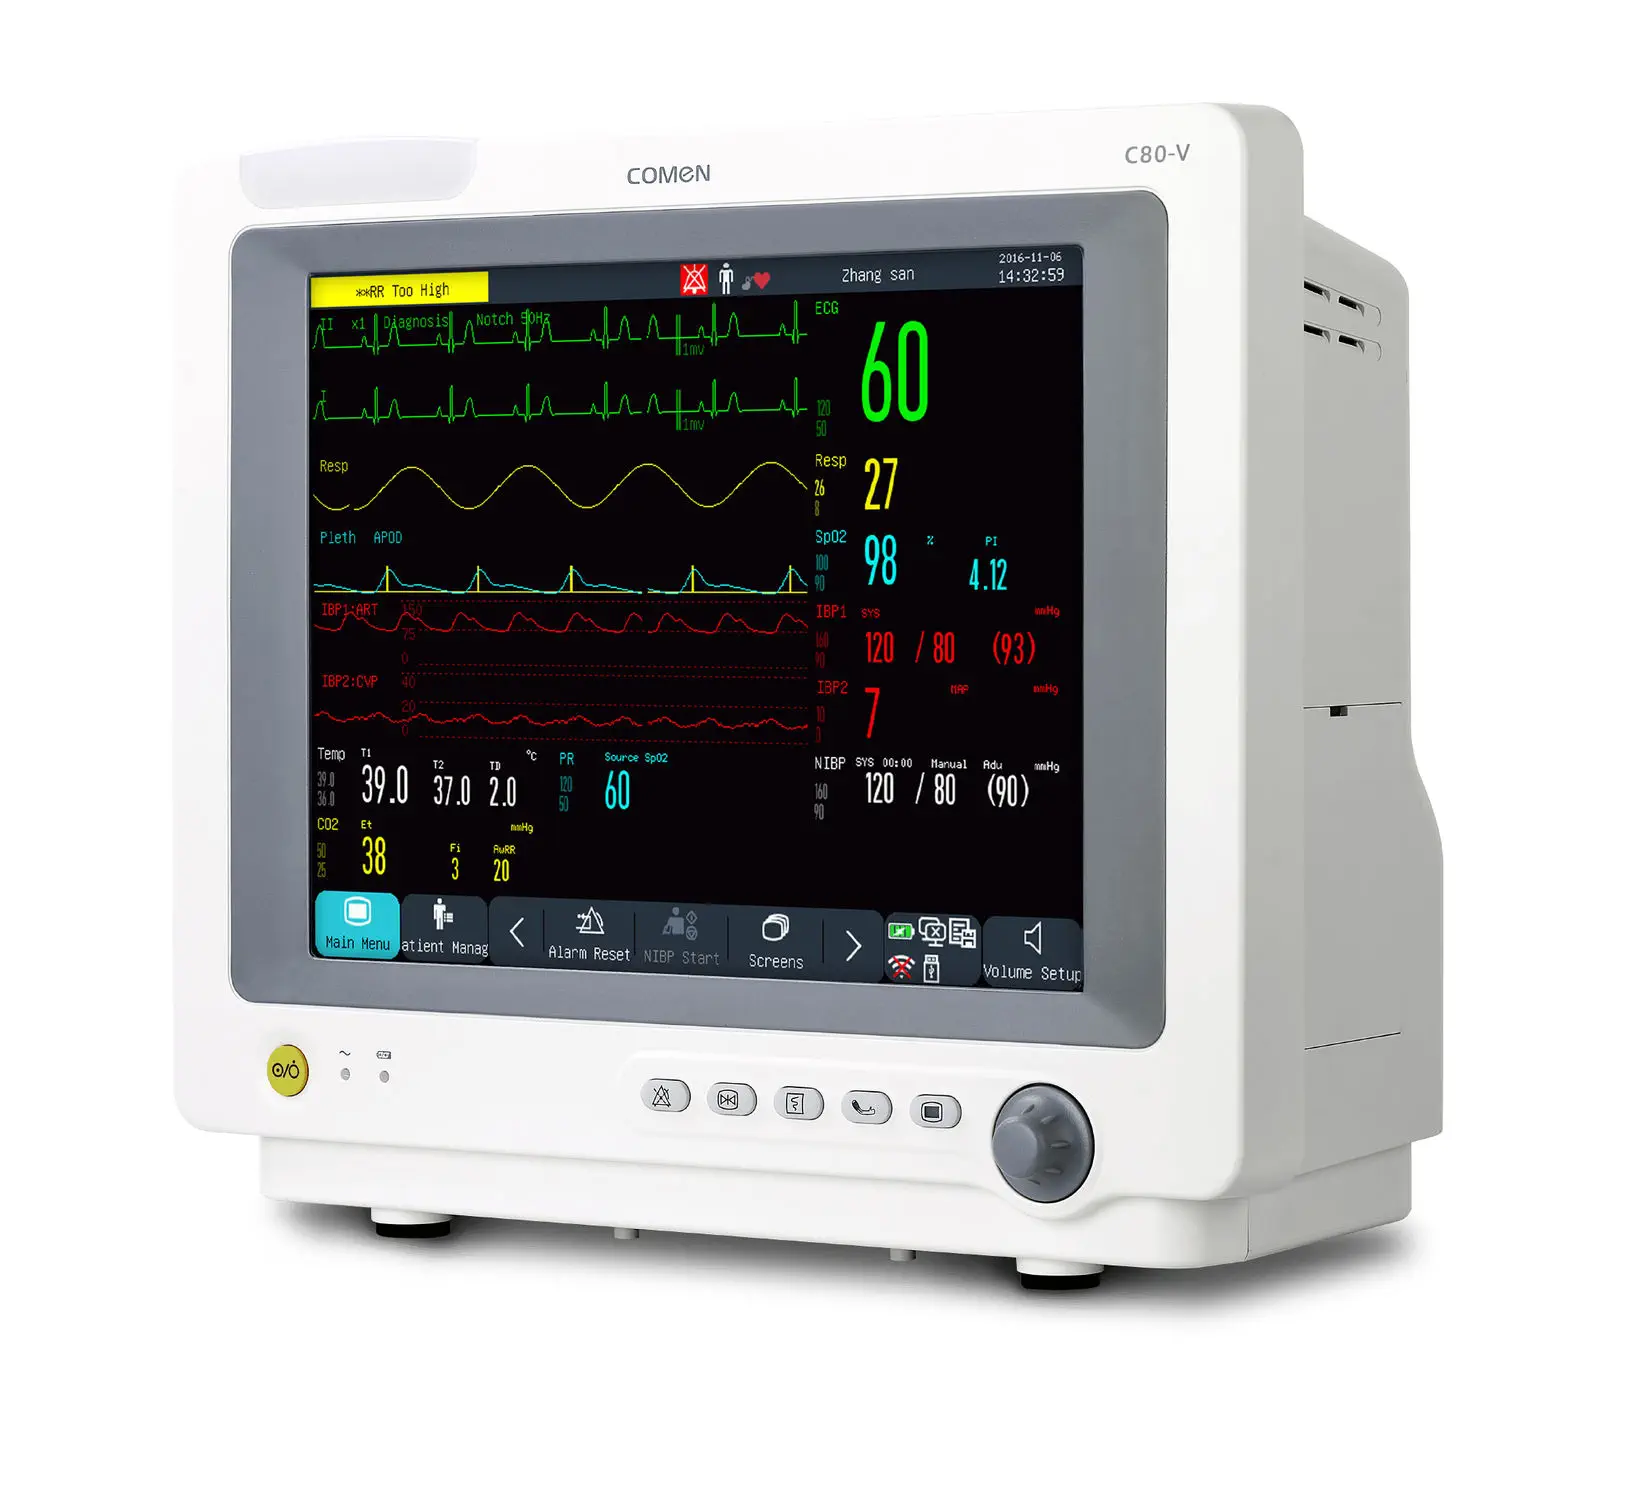 เครื่องติดตามการทำงานของหัวใจและสัญญาณชีพอัตโนมัติสำหรับสัตว์  Veterinary multi-parameter monitor C80-V  Comen